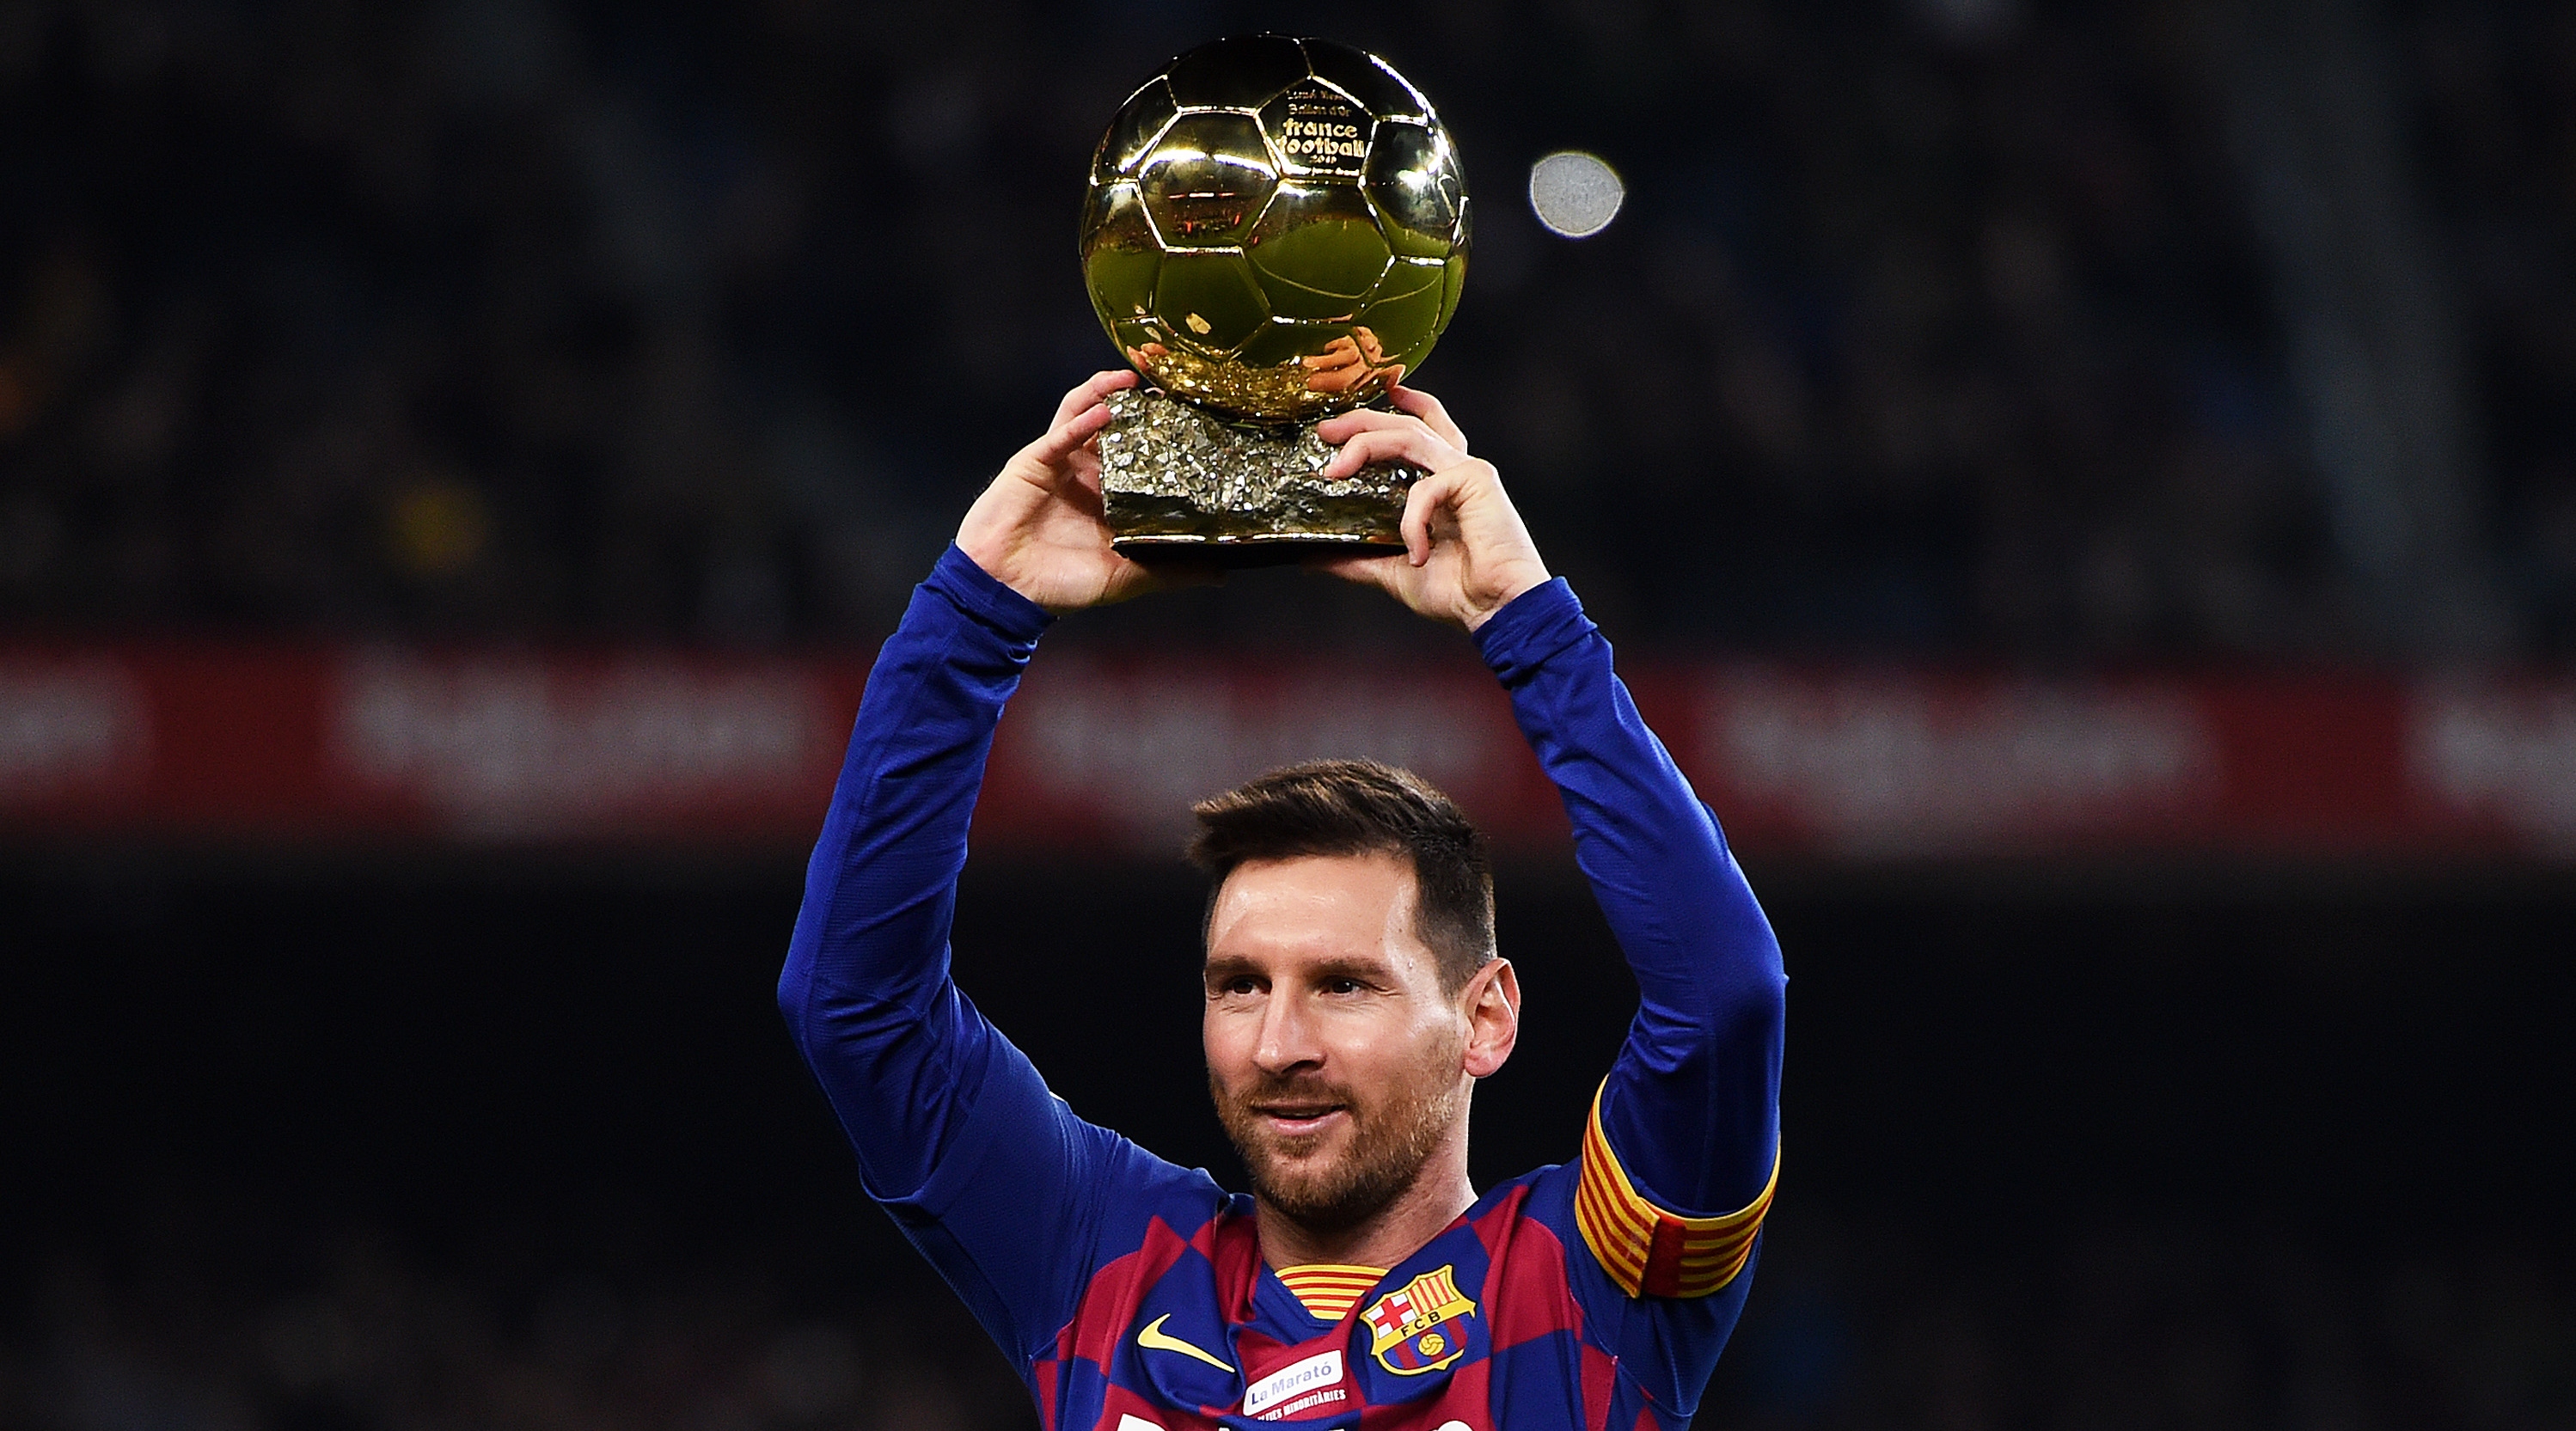 BARCELONE, ESPAGNE – 07 DÉCEMBRE : Lionel Messi du FC Barcelone brandit son sixième Ballon d'Or avant le match de La Liga entre le FC Barcelone et le RCD Majorque au Camp Nou le 07 décembre 2019 à Barcelone, Espagne.  (Photo par Alex Caparros/Getty Images)